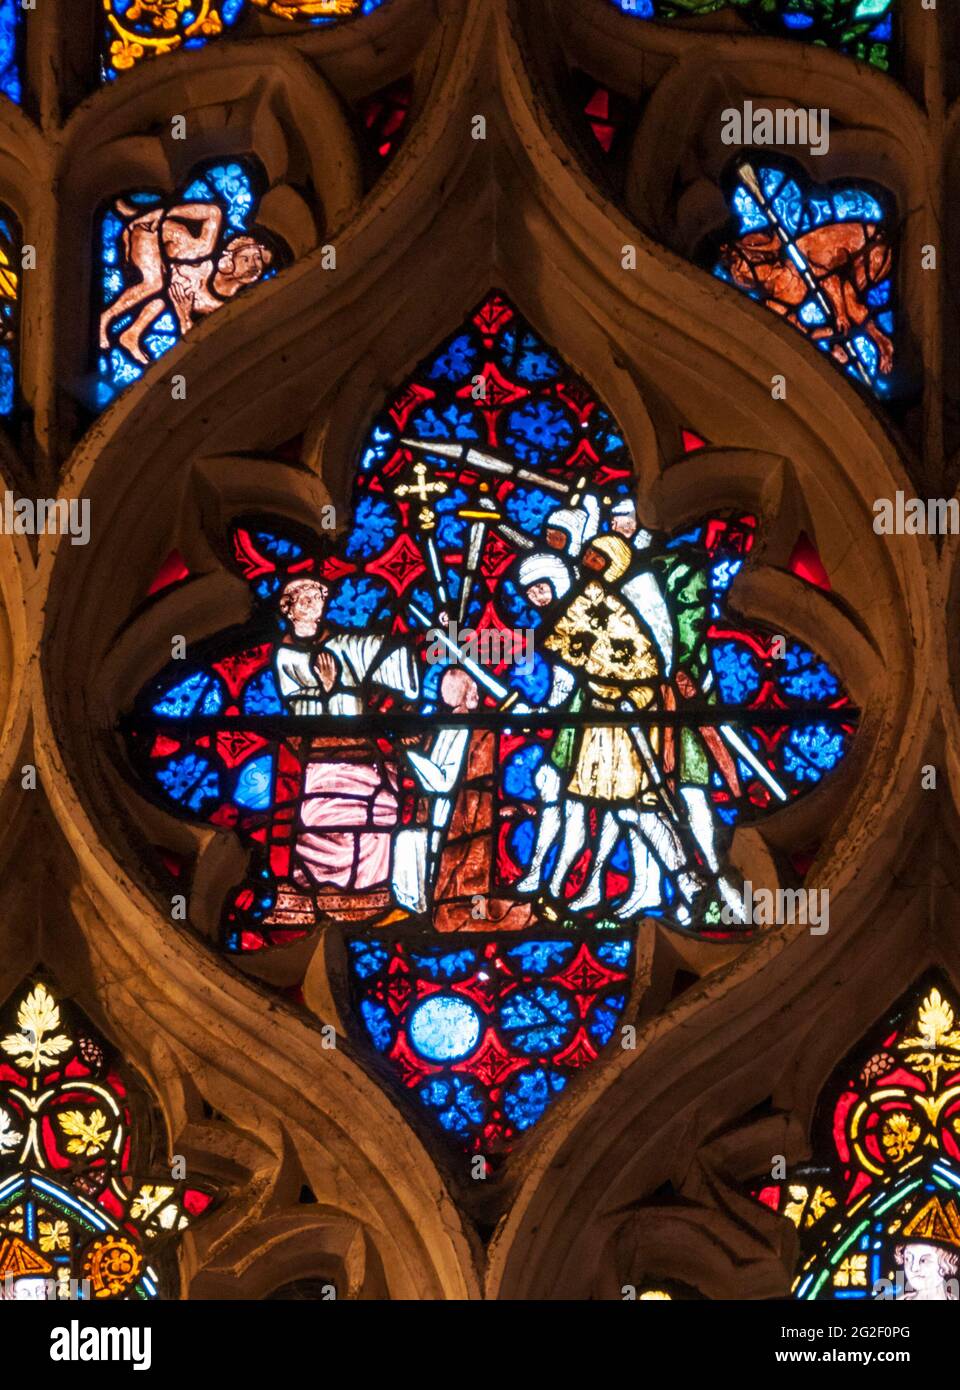 Détail de 1320 vitraux de Becket dans la cathédrale Christ Church, Oxford. Montre la mort de Becket - traits faciaux enlevés par ordre de Henri VIII Banque D'Images